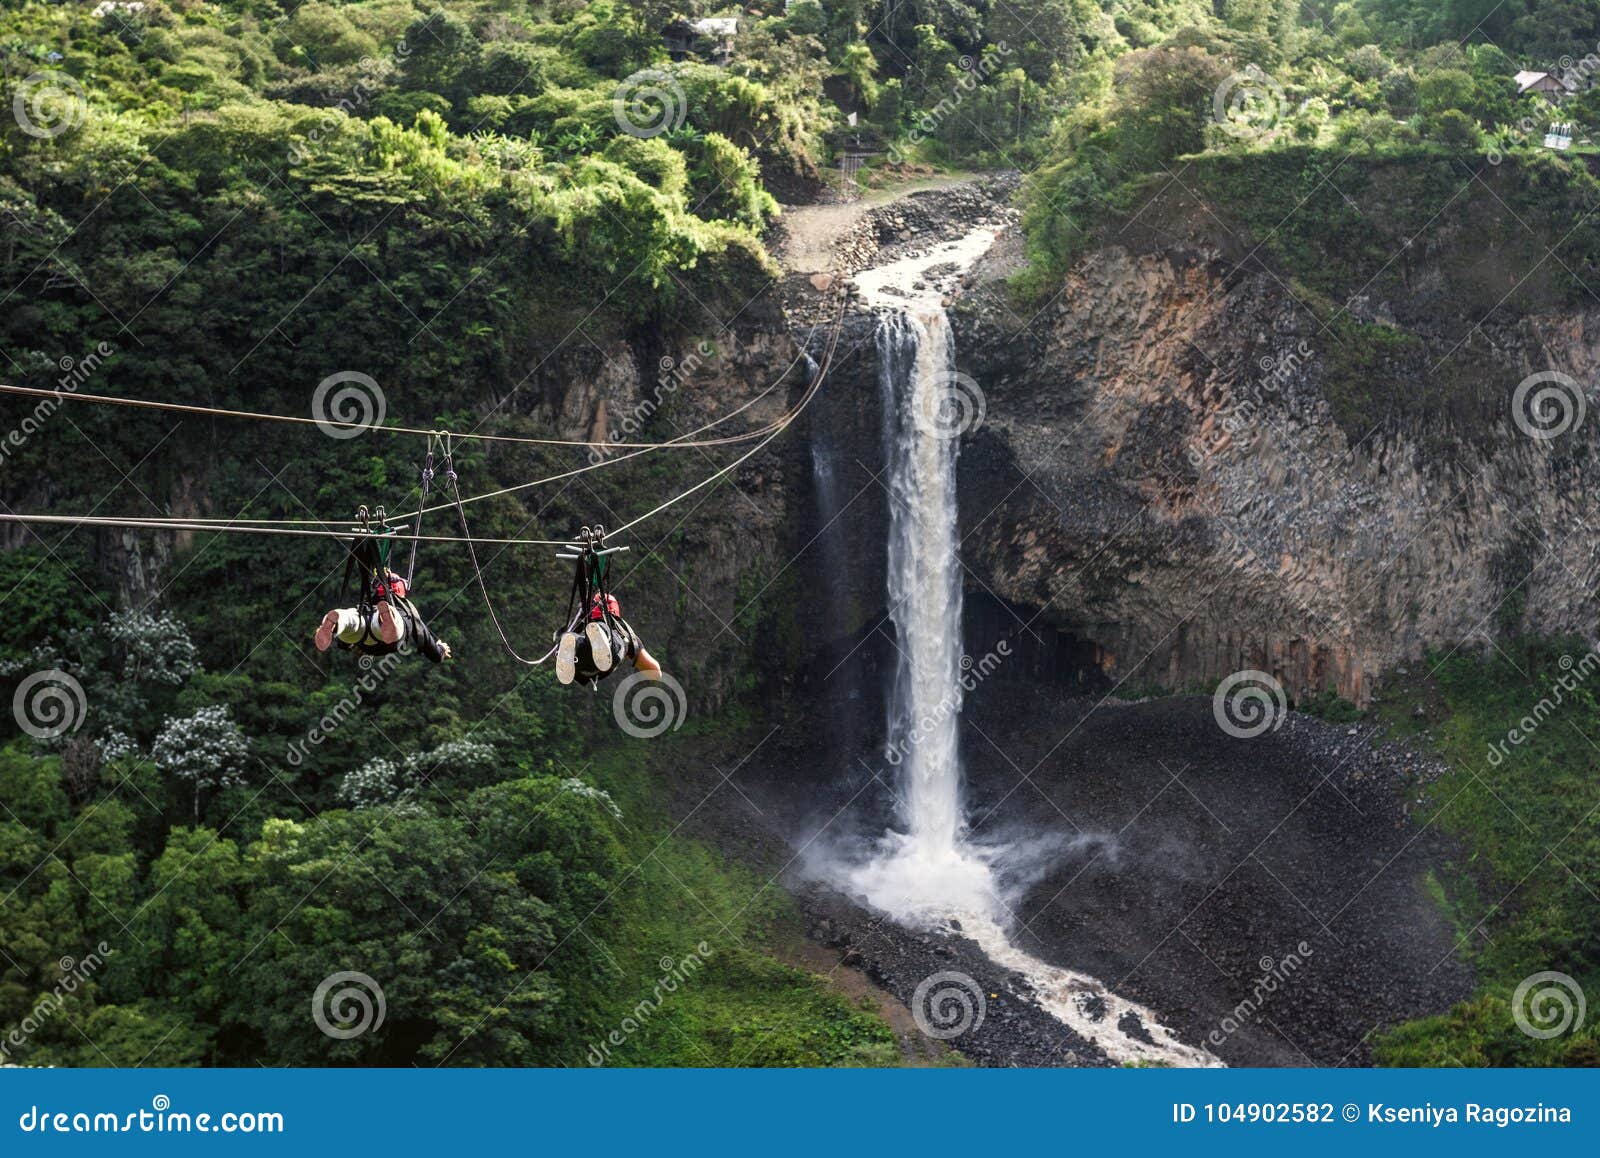 tourists gliding on the zip line trip, cascades route, banos, ecuador